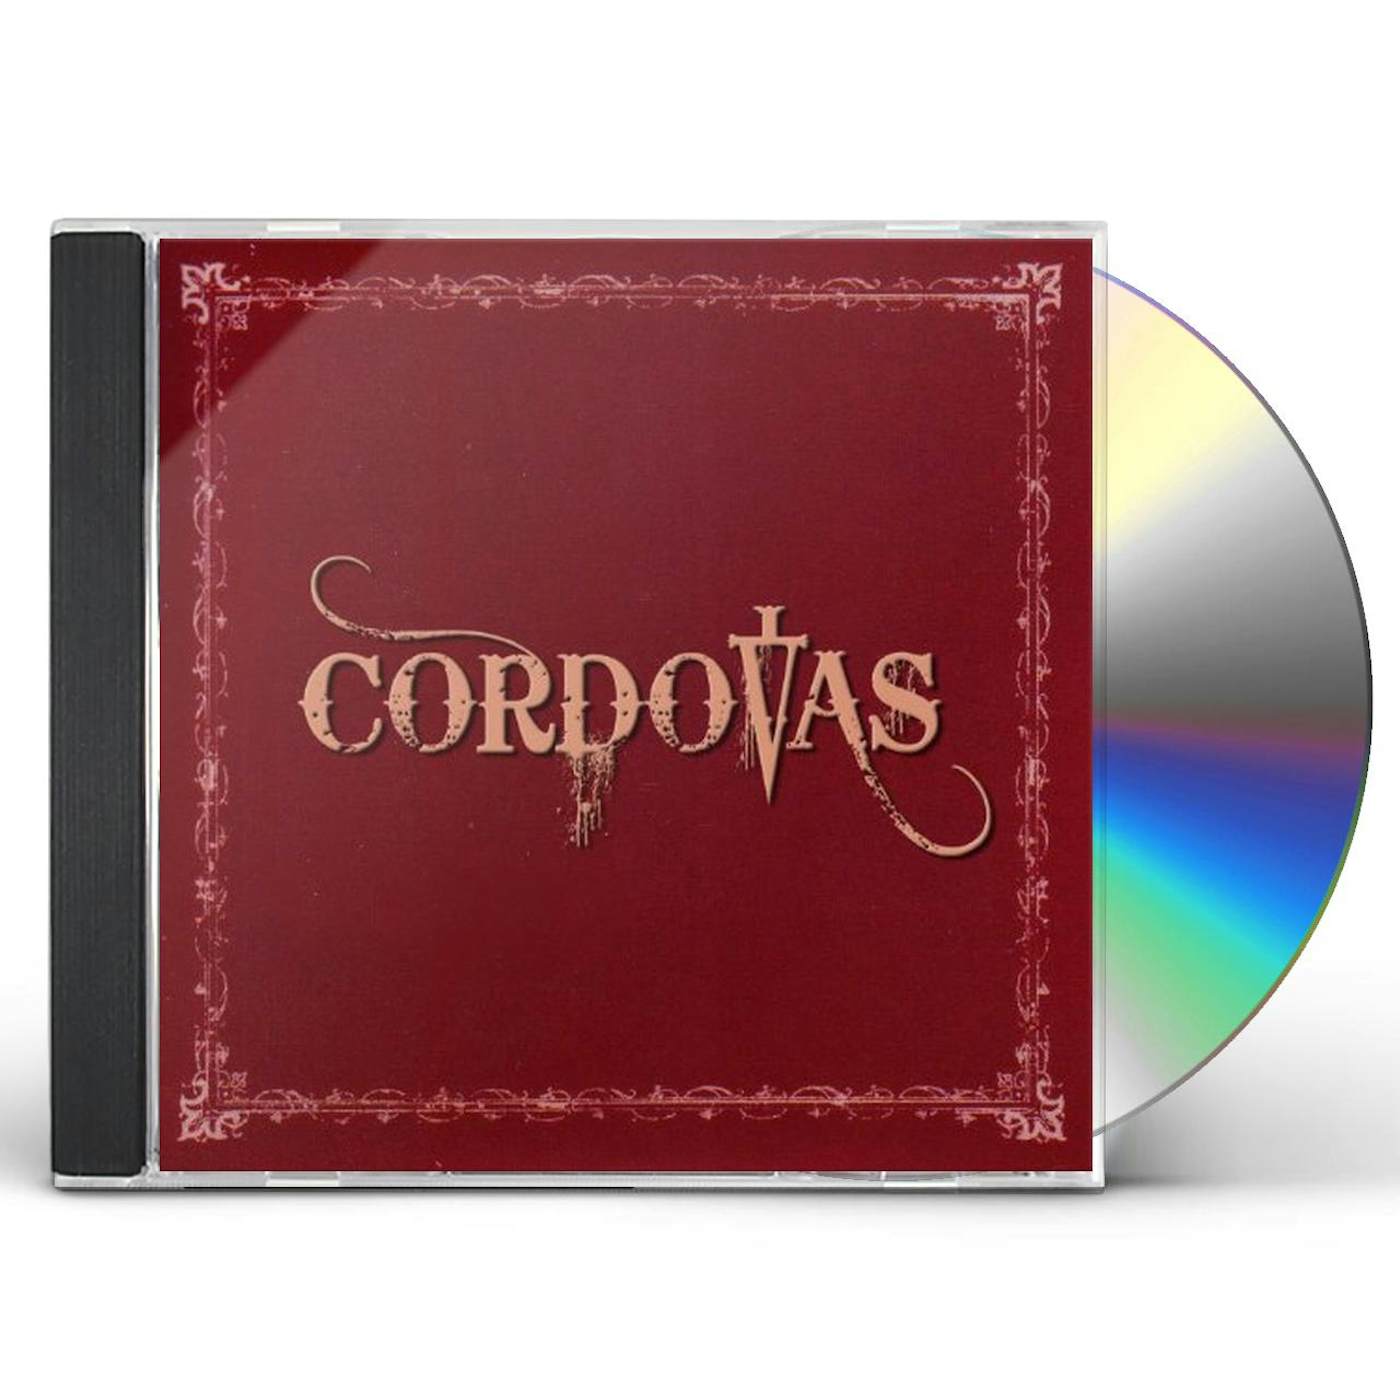 CORDOVAS CD